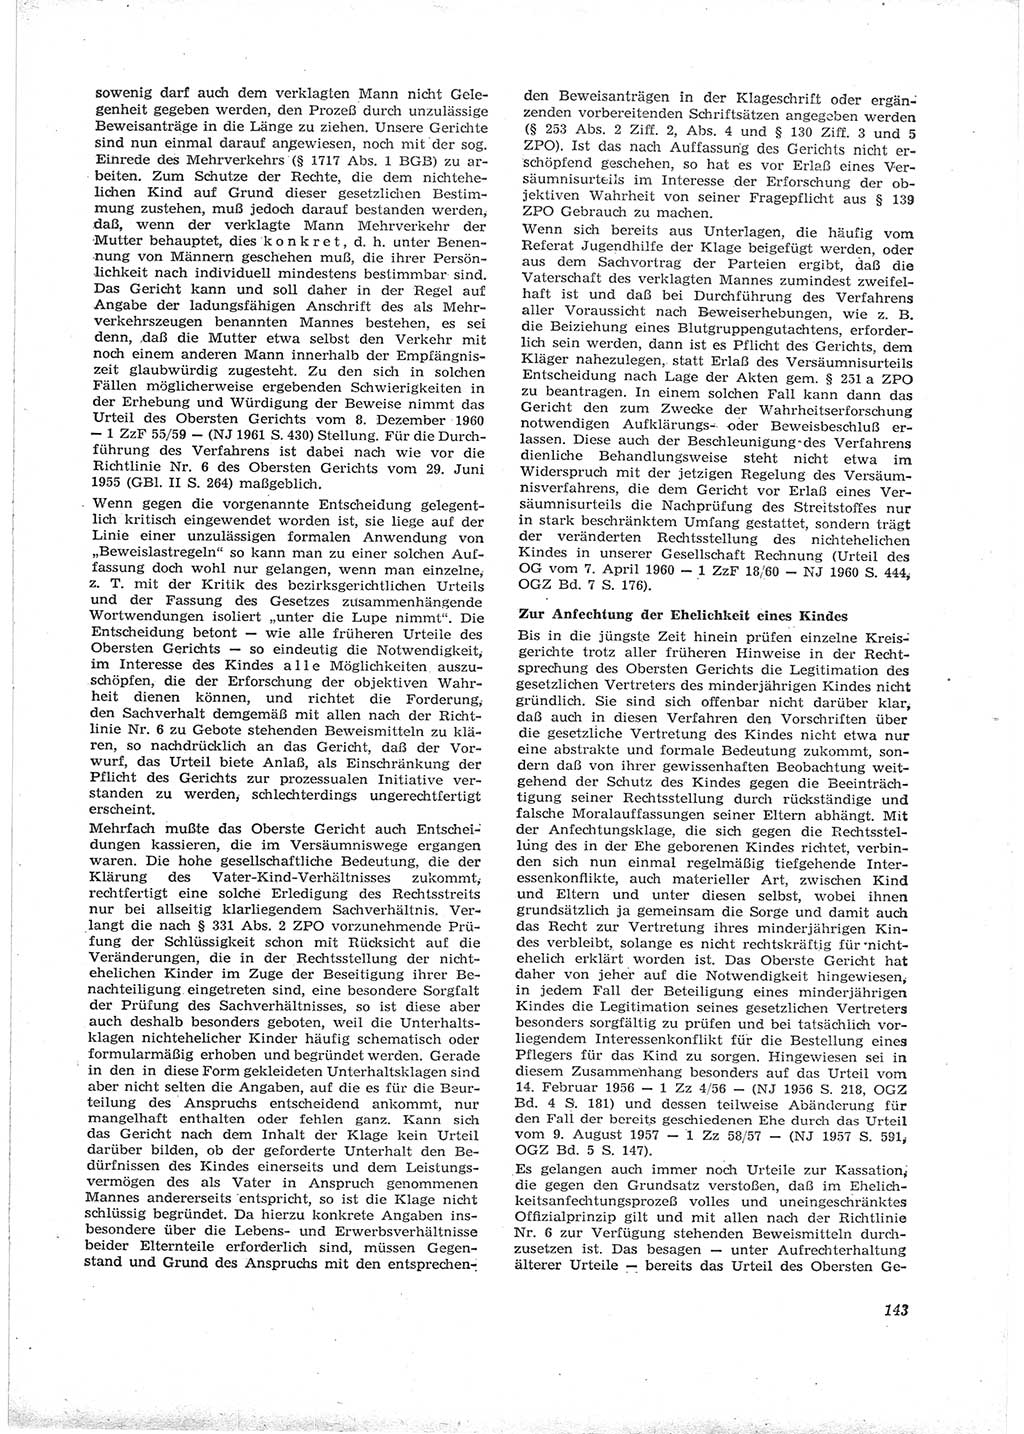 Neue Justiz (NJ), Zeitschrift für Recht und Rechtswissenschaft [Deutsche Demokratische Republik (DDR)], 16. Jahrgang 1962, Seite 143 (NJ DDR 1962, S. 143)